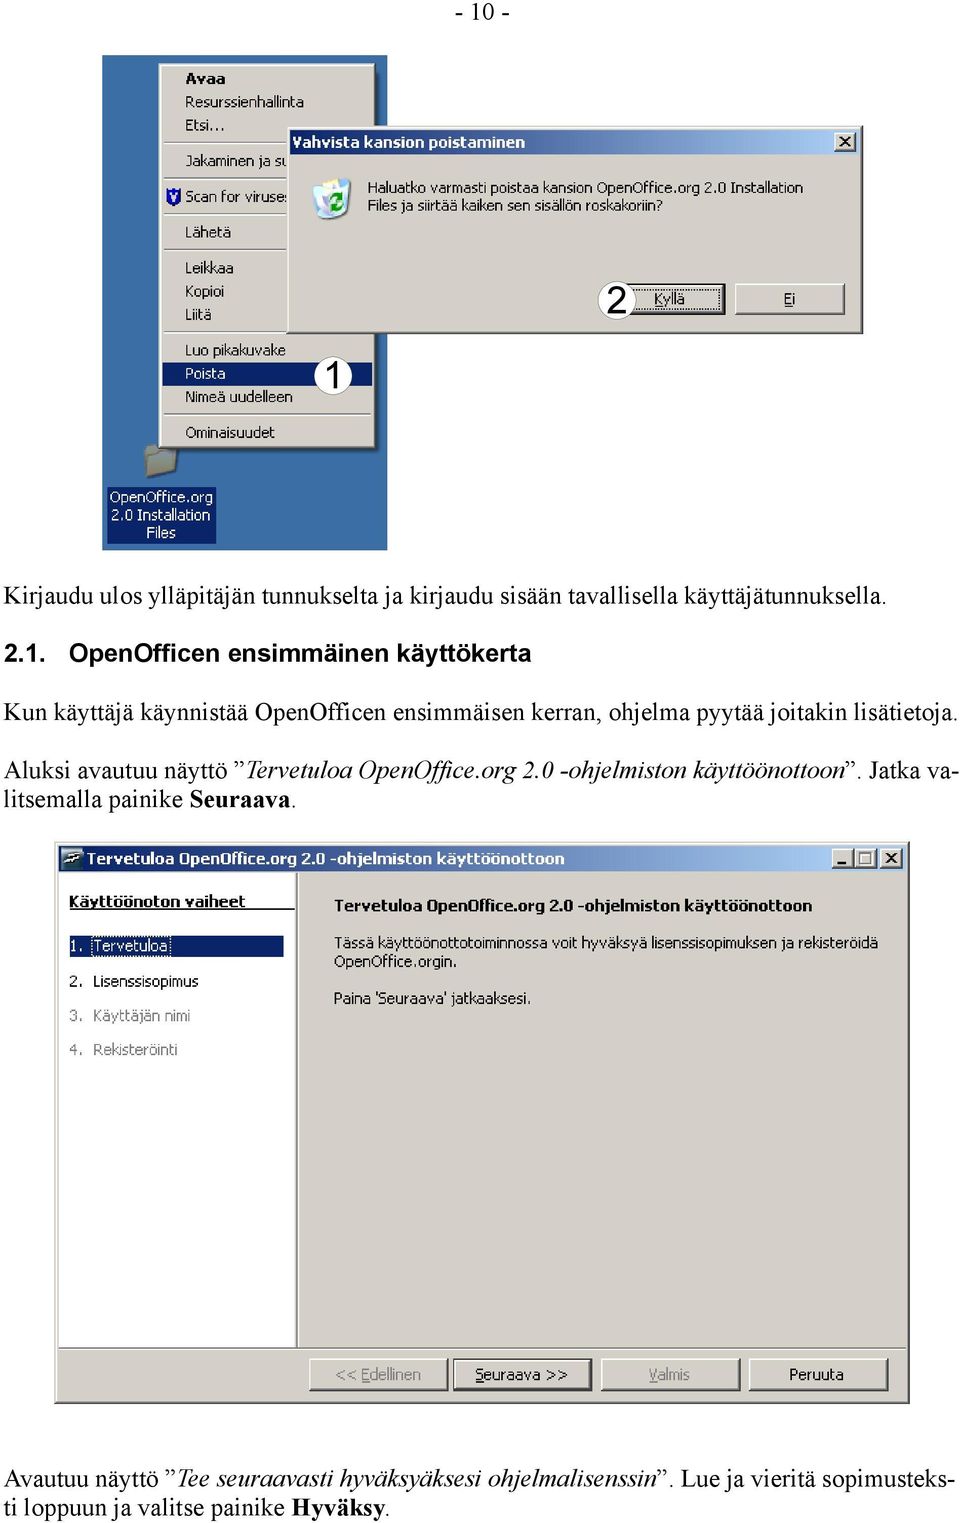 Aluksi avautuu näyttö Tervetuloa OpenOffice.org 2.0 -ohjelmiston käyttöönottoon. Jatka valitsemalla painike Seuraava.